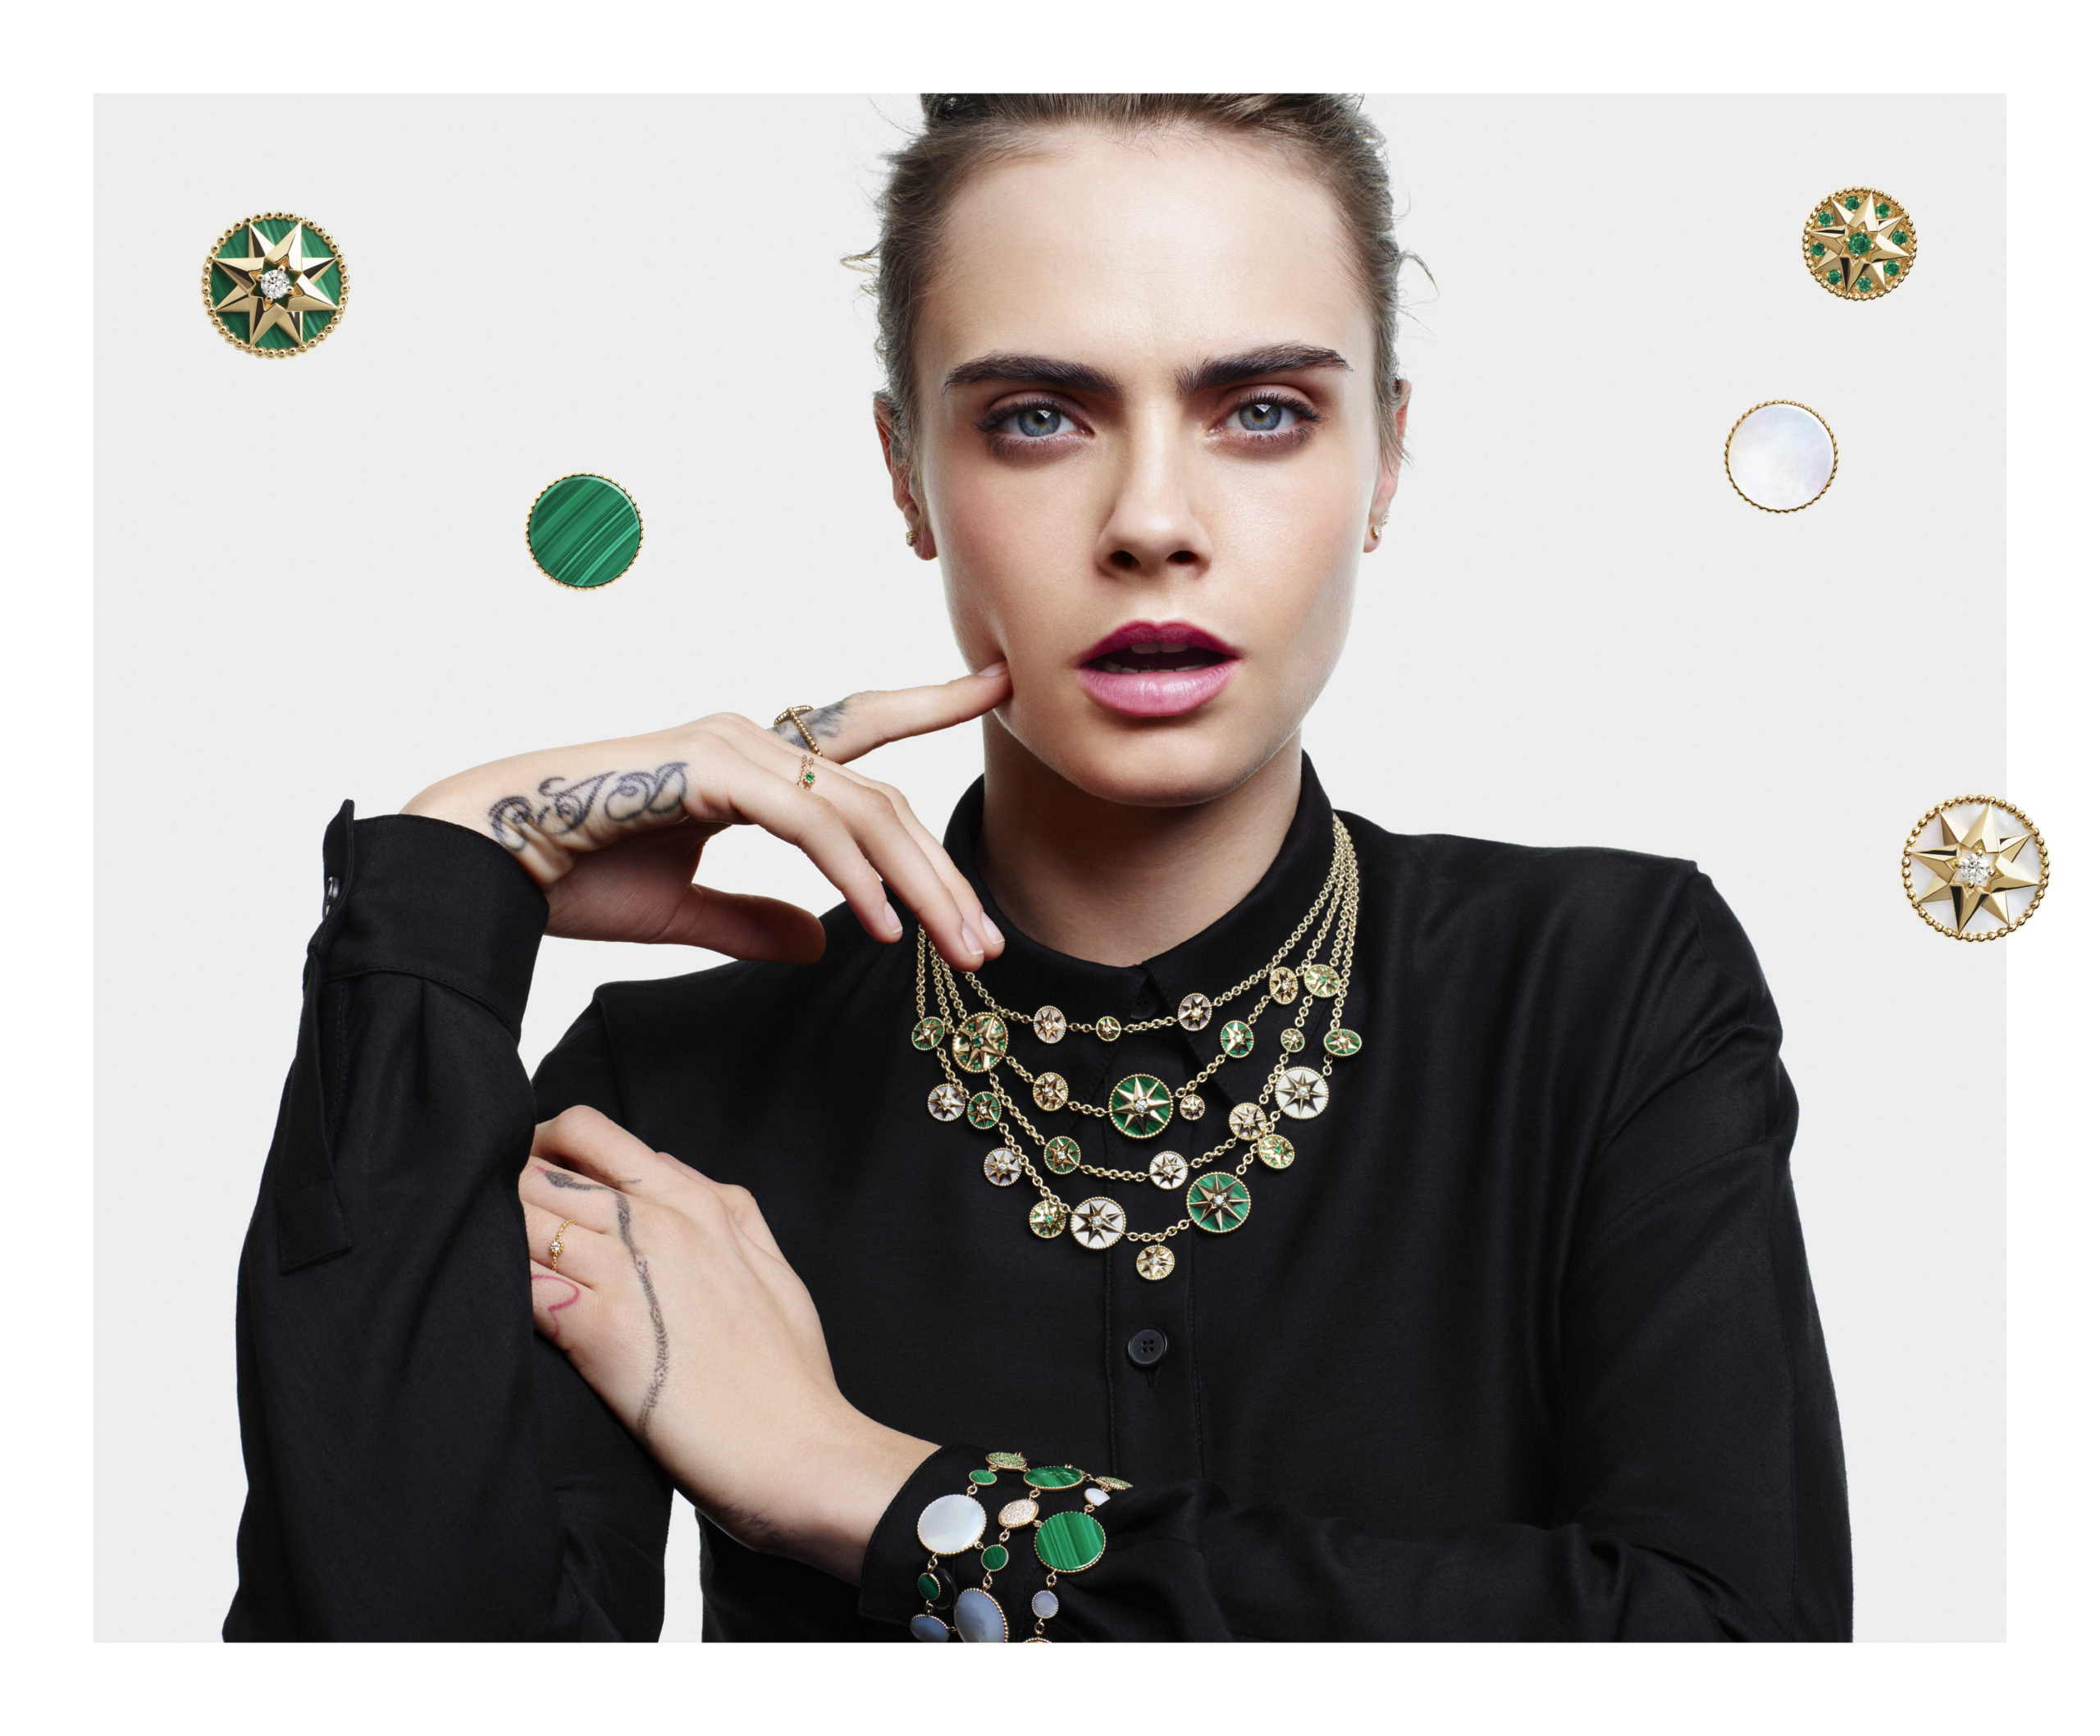 Iconique, la collection Rose des Vents est au cœur de la nouvelle campagne Dior joaillerie